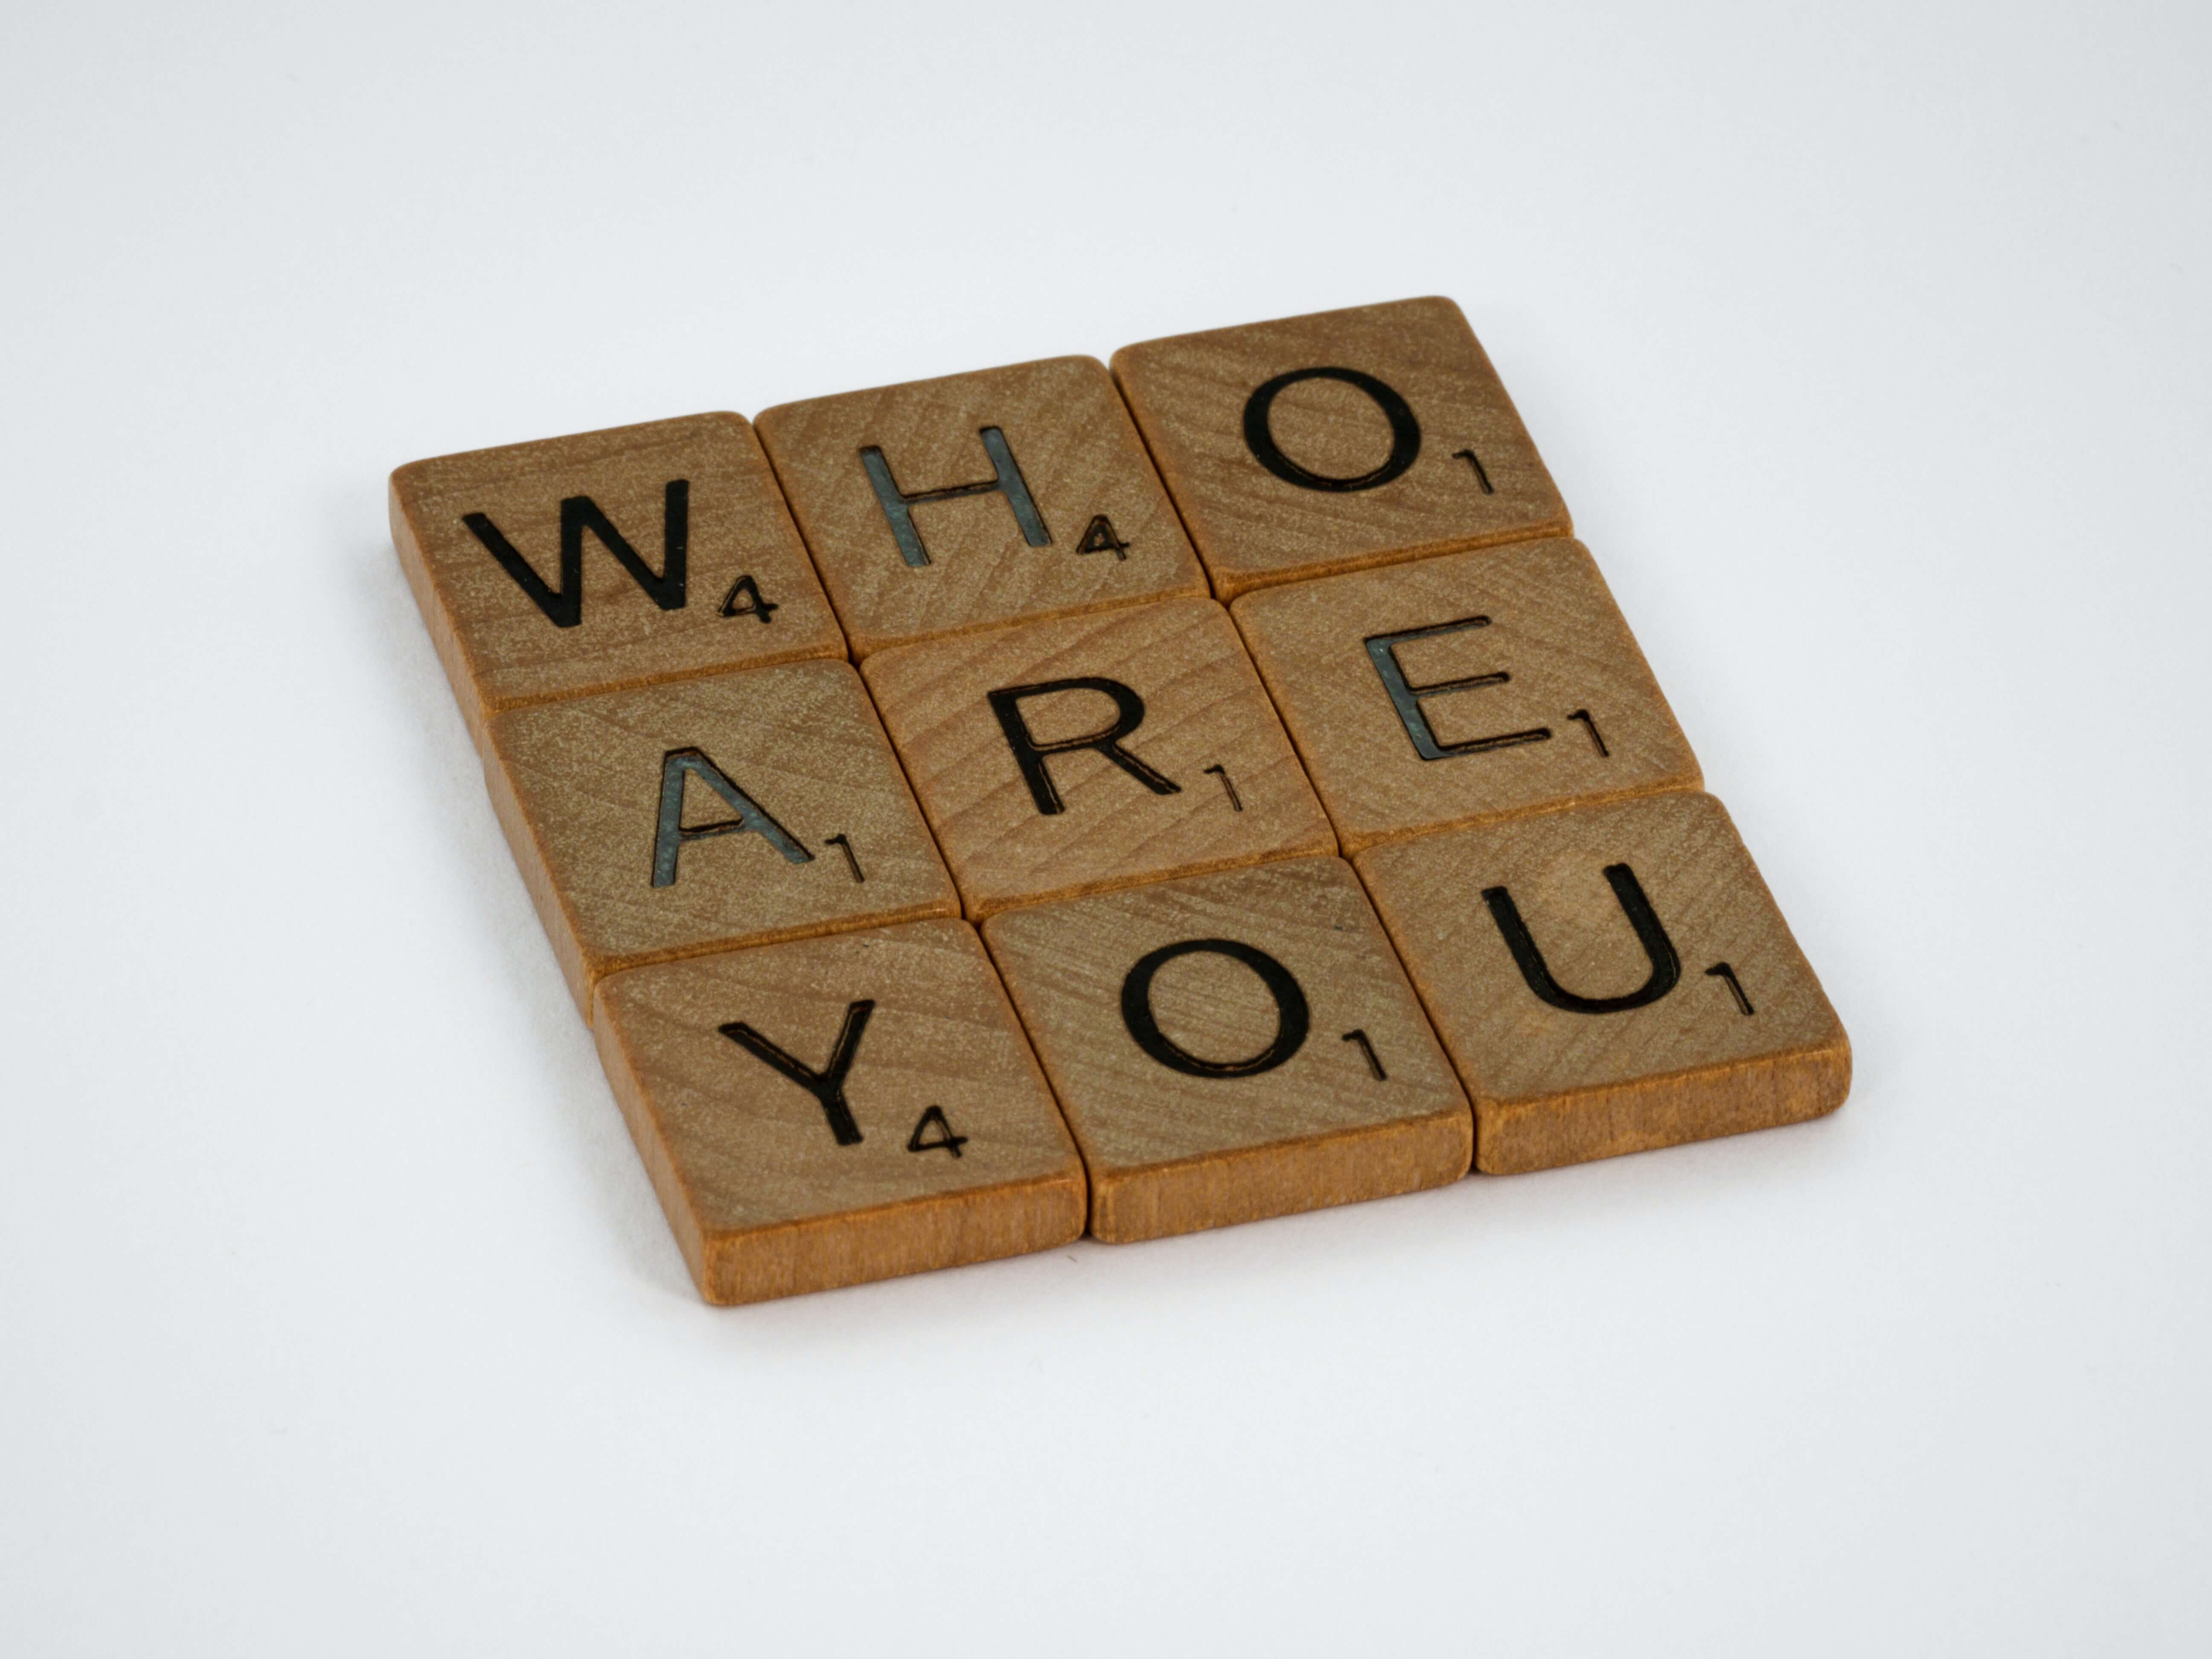 Symbolbild Employer Branding: Scrabble-Steine formen die Frage Who are you